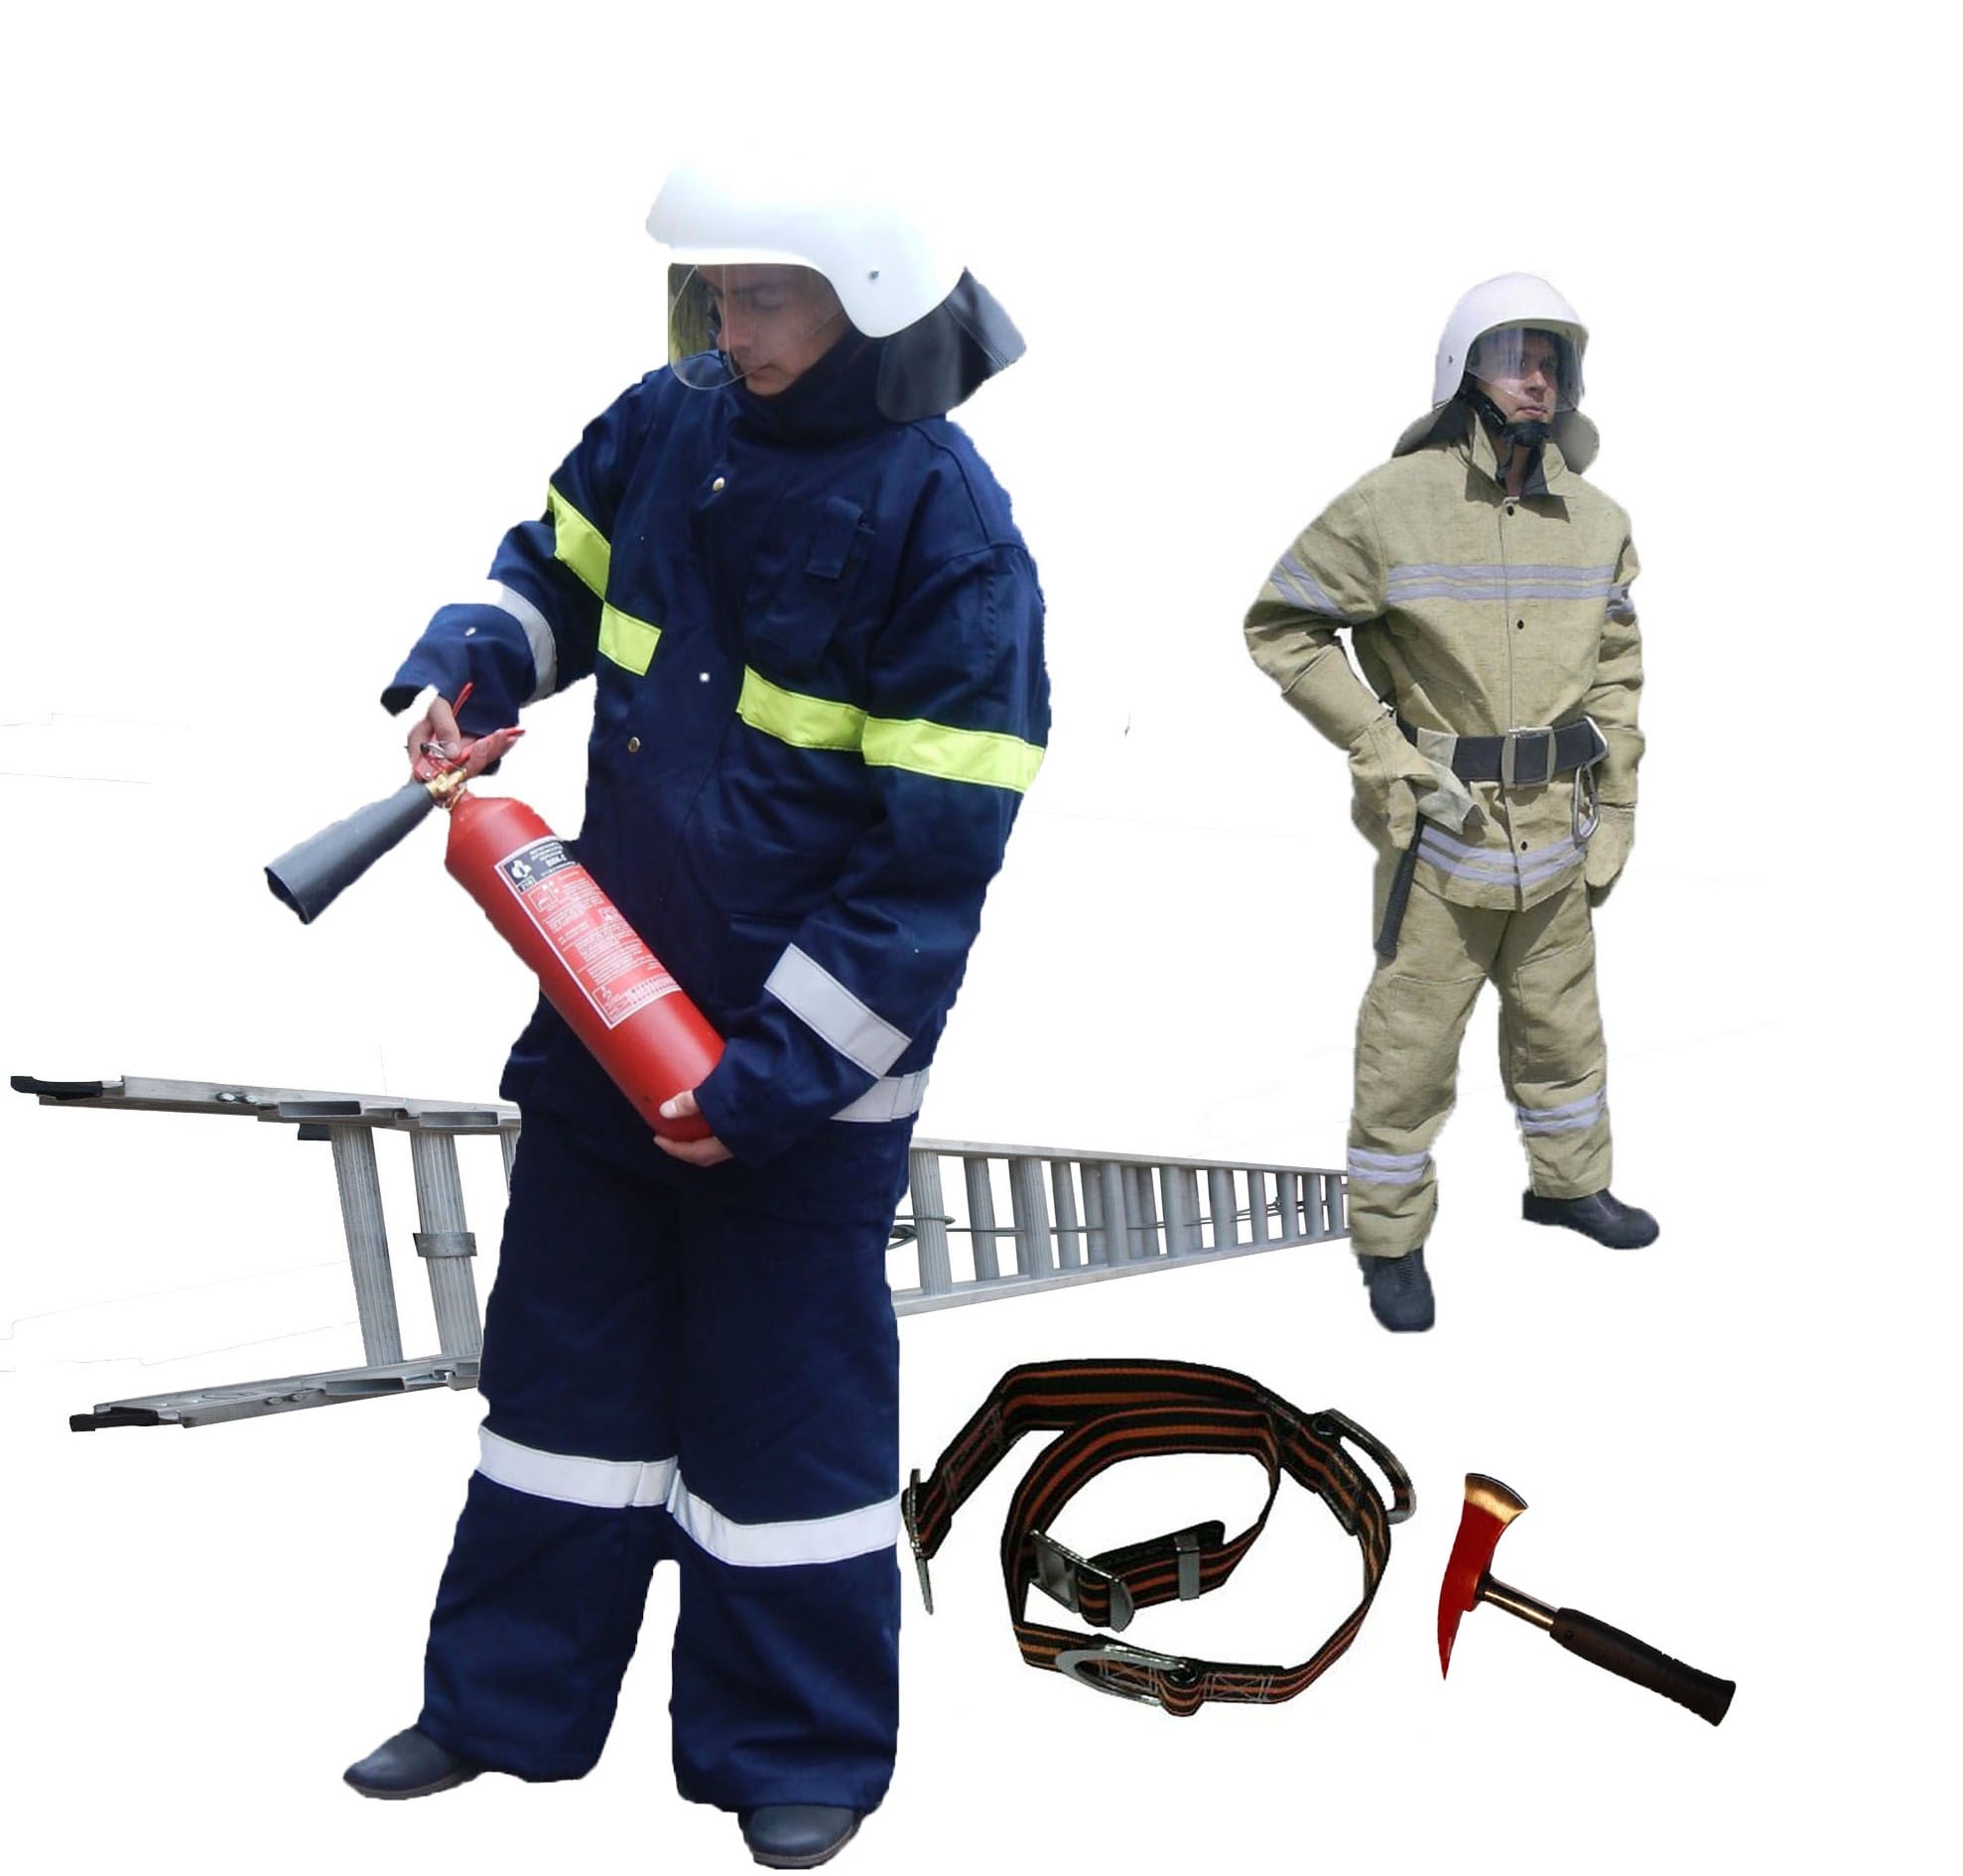 Firefighting equipment